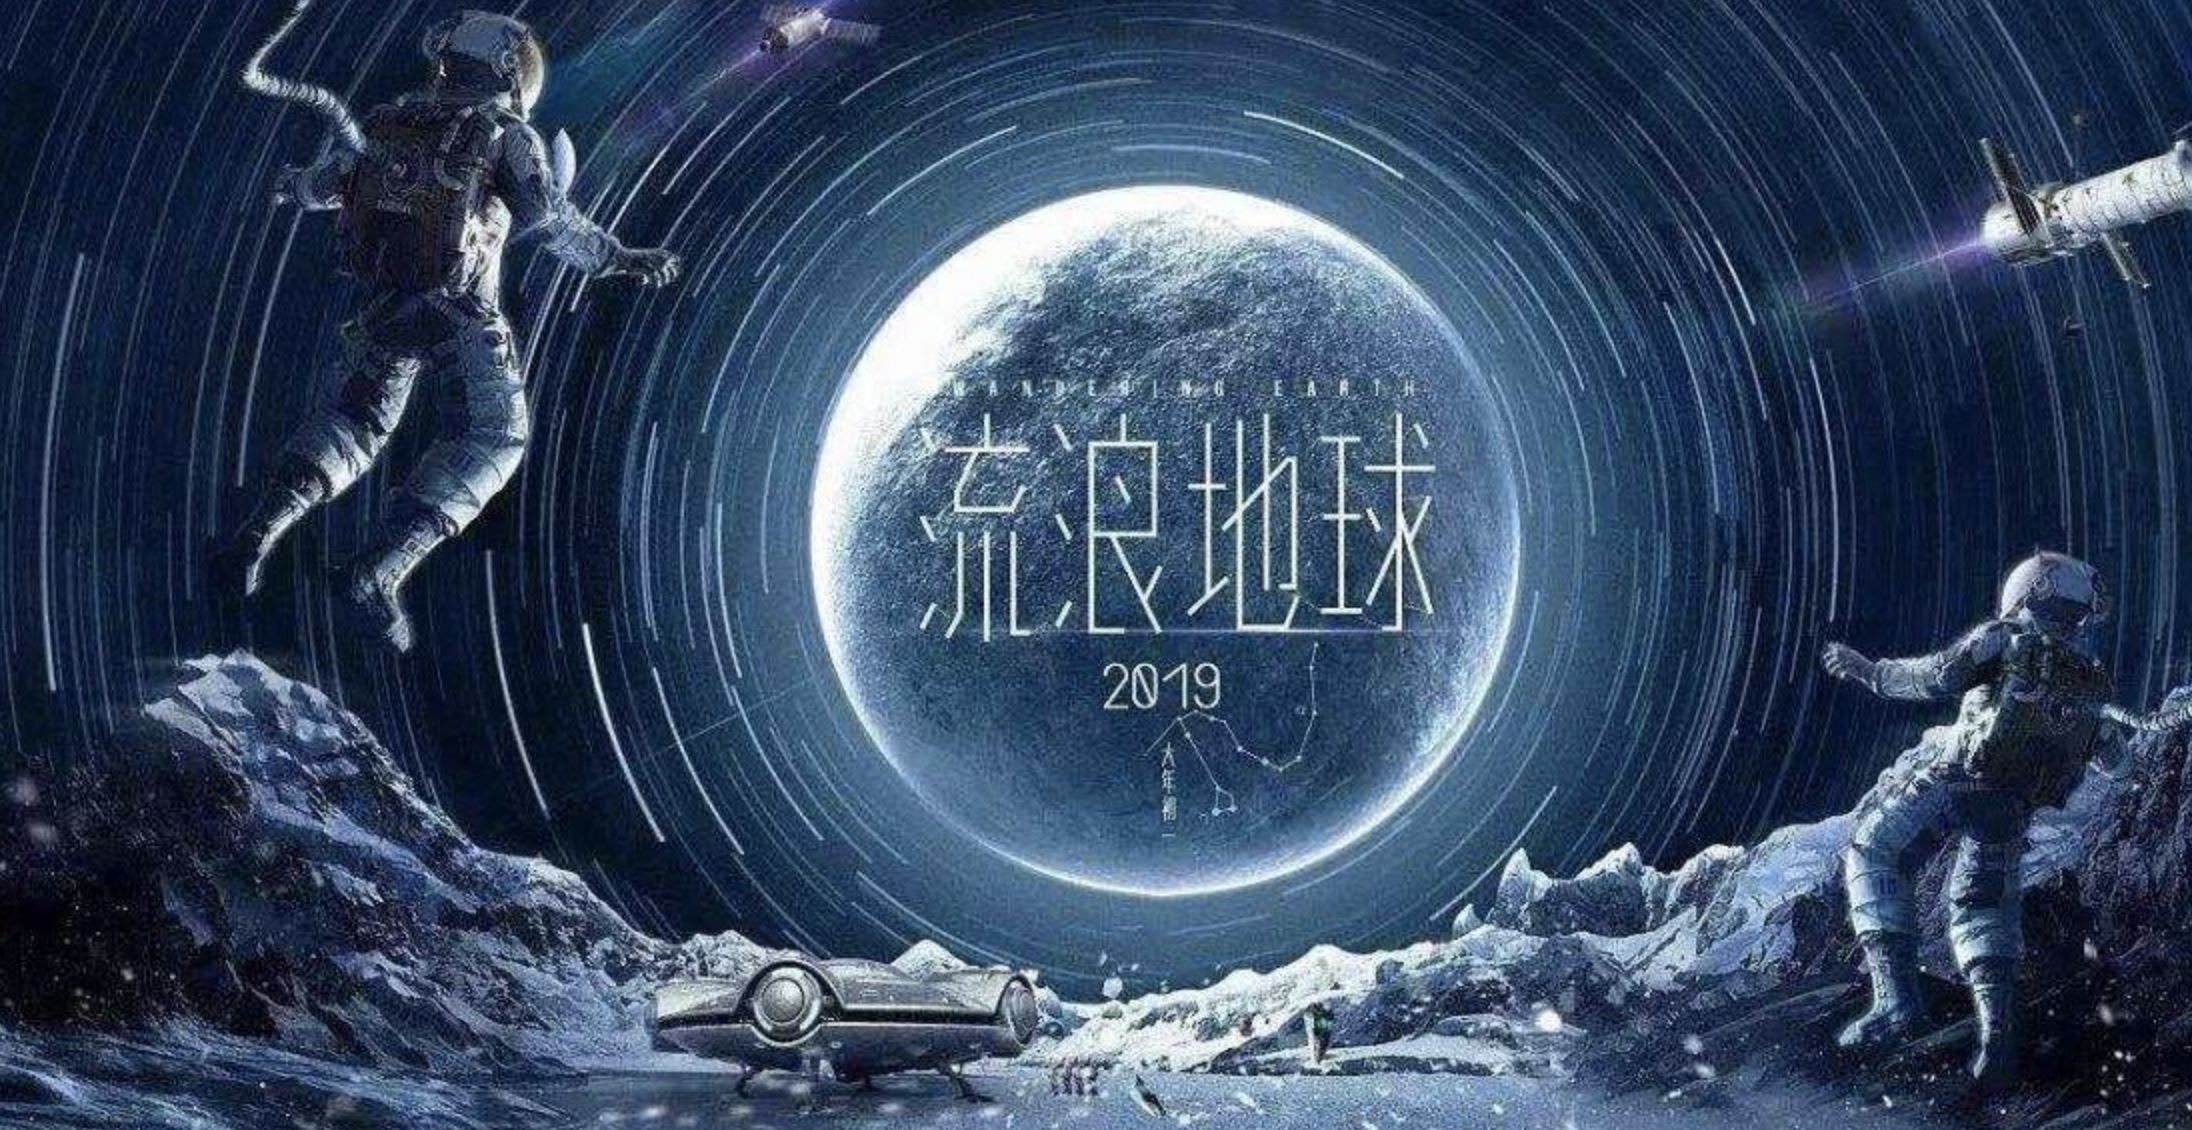 创造30亿票房的刘慈欣曾:中国科幻电影开启了壮丽的航程